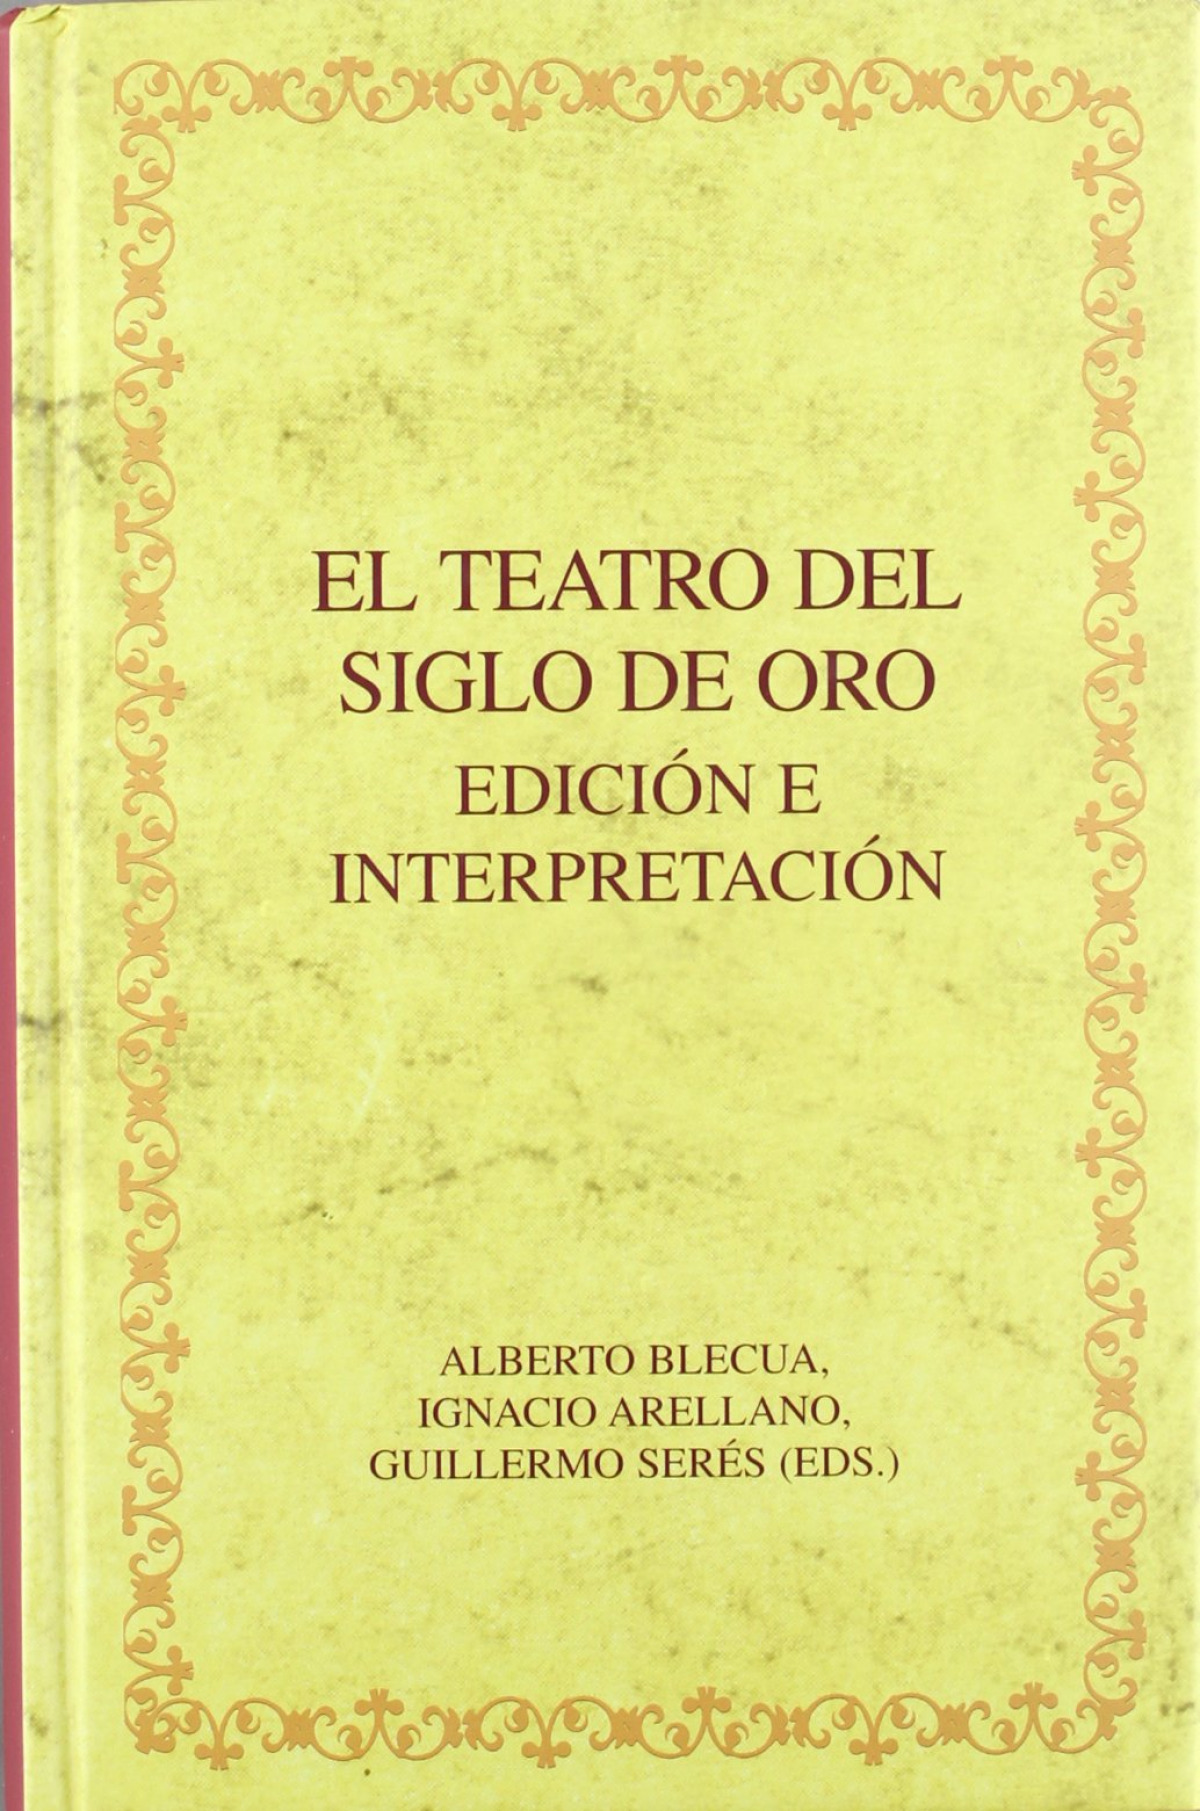 Teatro del siglo de oro.Edición e interpretación - Blecua, Alberto